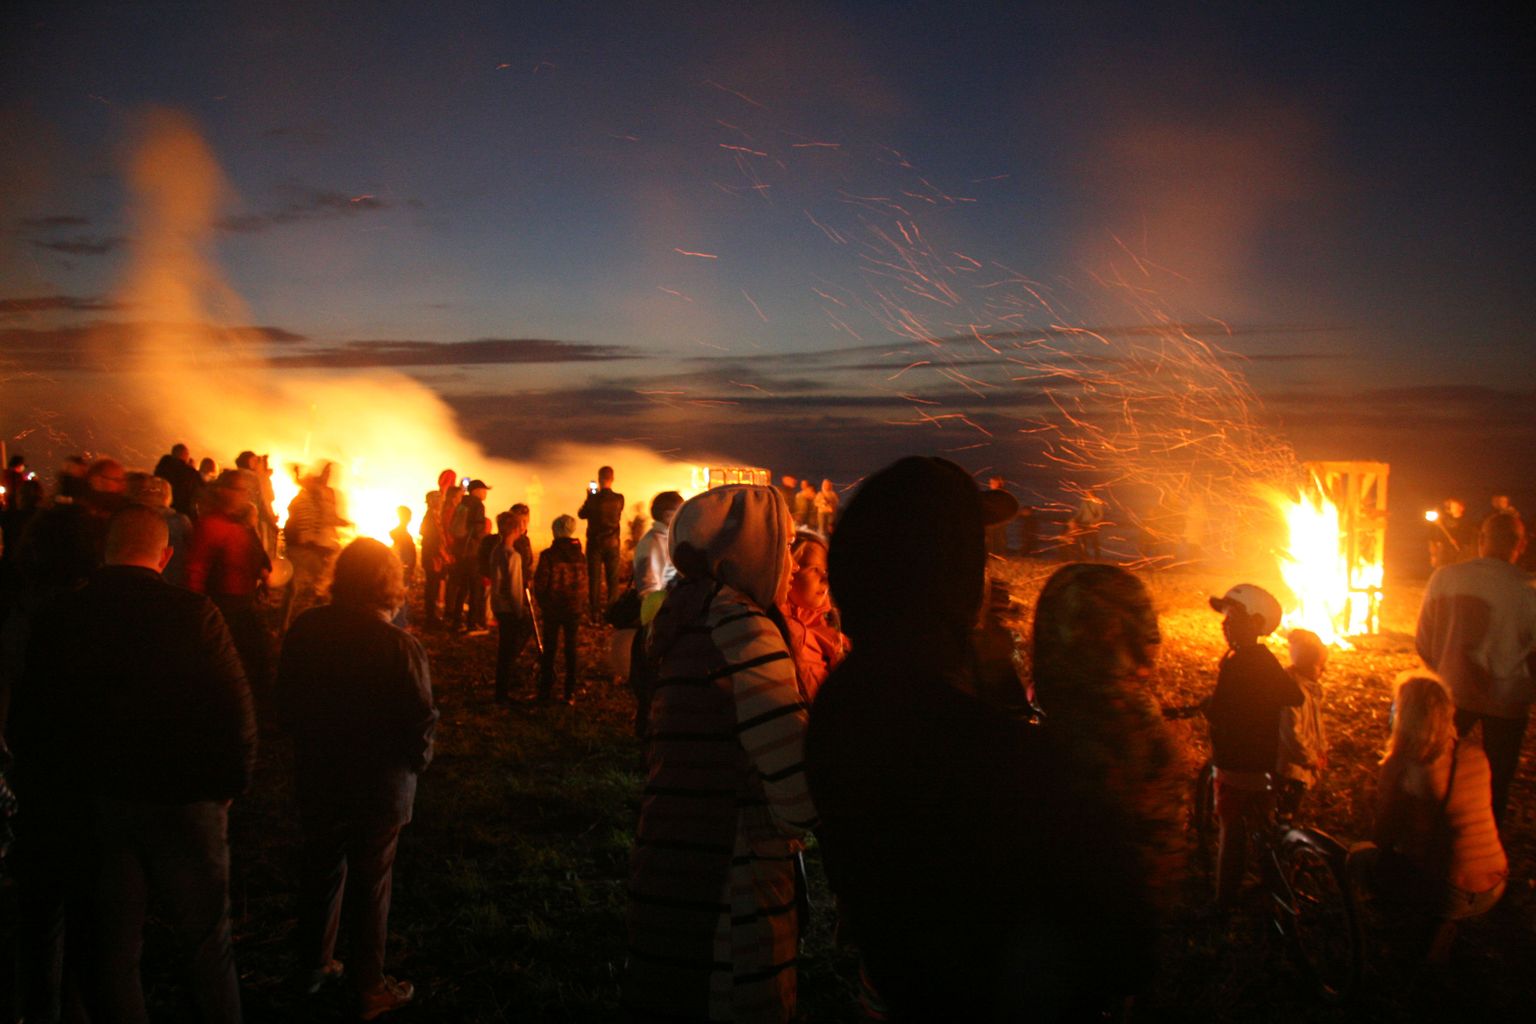 В субботу вечером по всей Эстонии зажгут сотни костров. В Ида-Вирумаа традиция празднования ночи древних огней самая давняя на тойласком пляже.